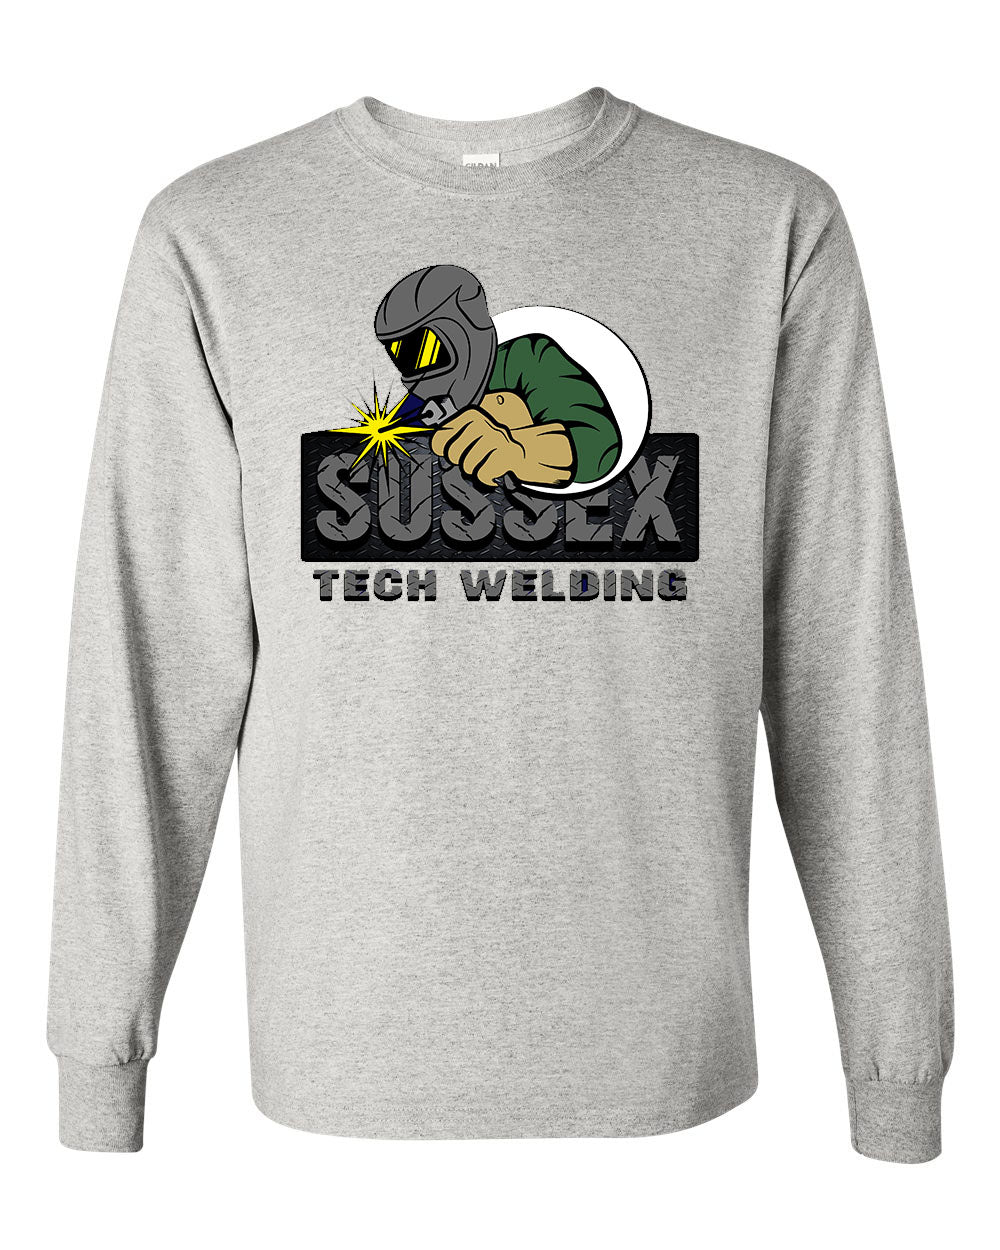 Sussex Tech Welding design 2 Long Sleeve Shirt